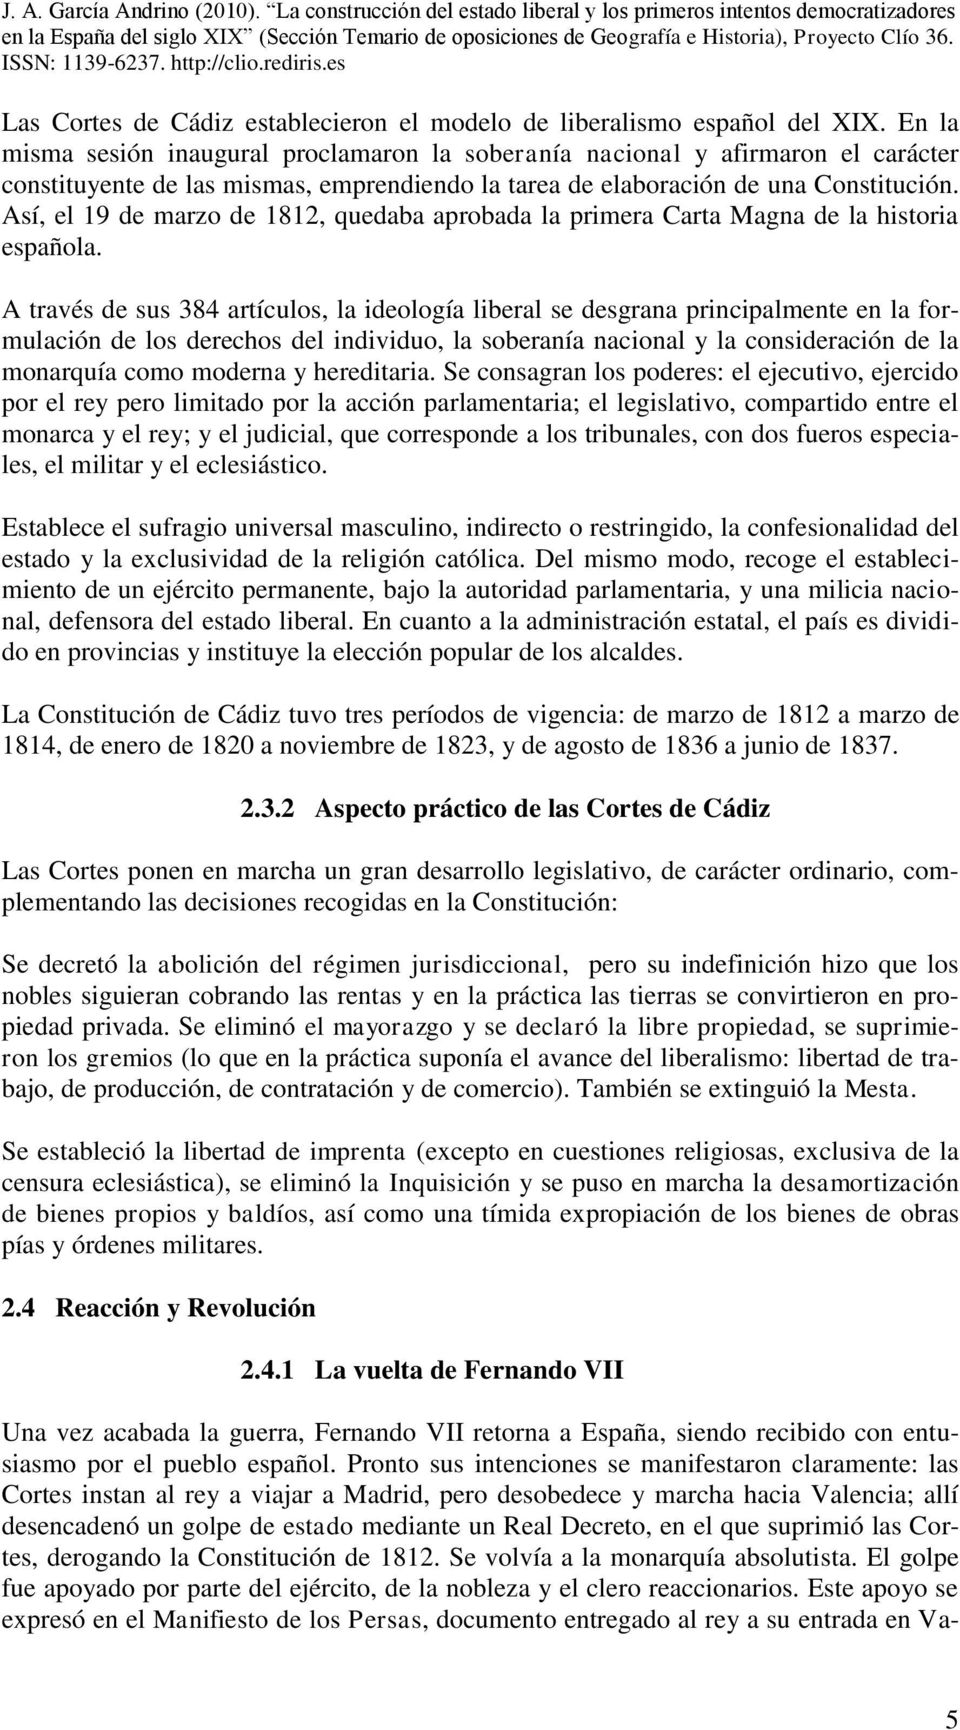 Así, el 19 de marzo de 1812, quedaba aprobada la primera Carta Magna de la historia española.